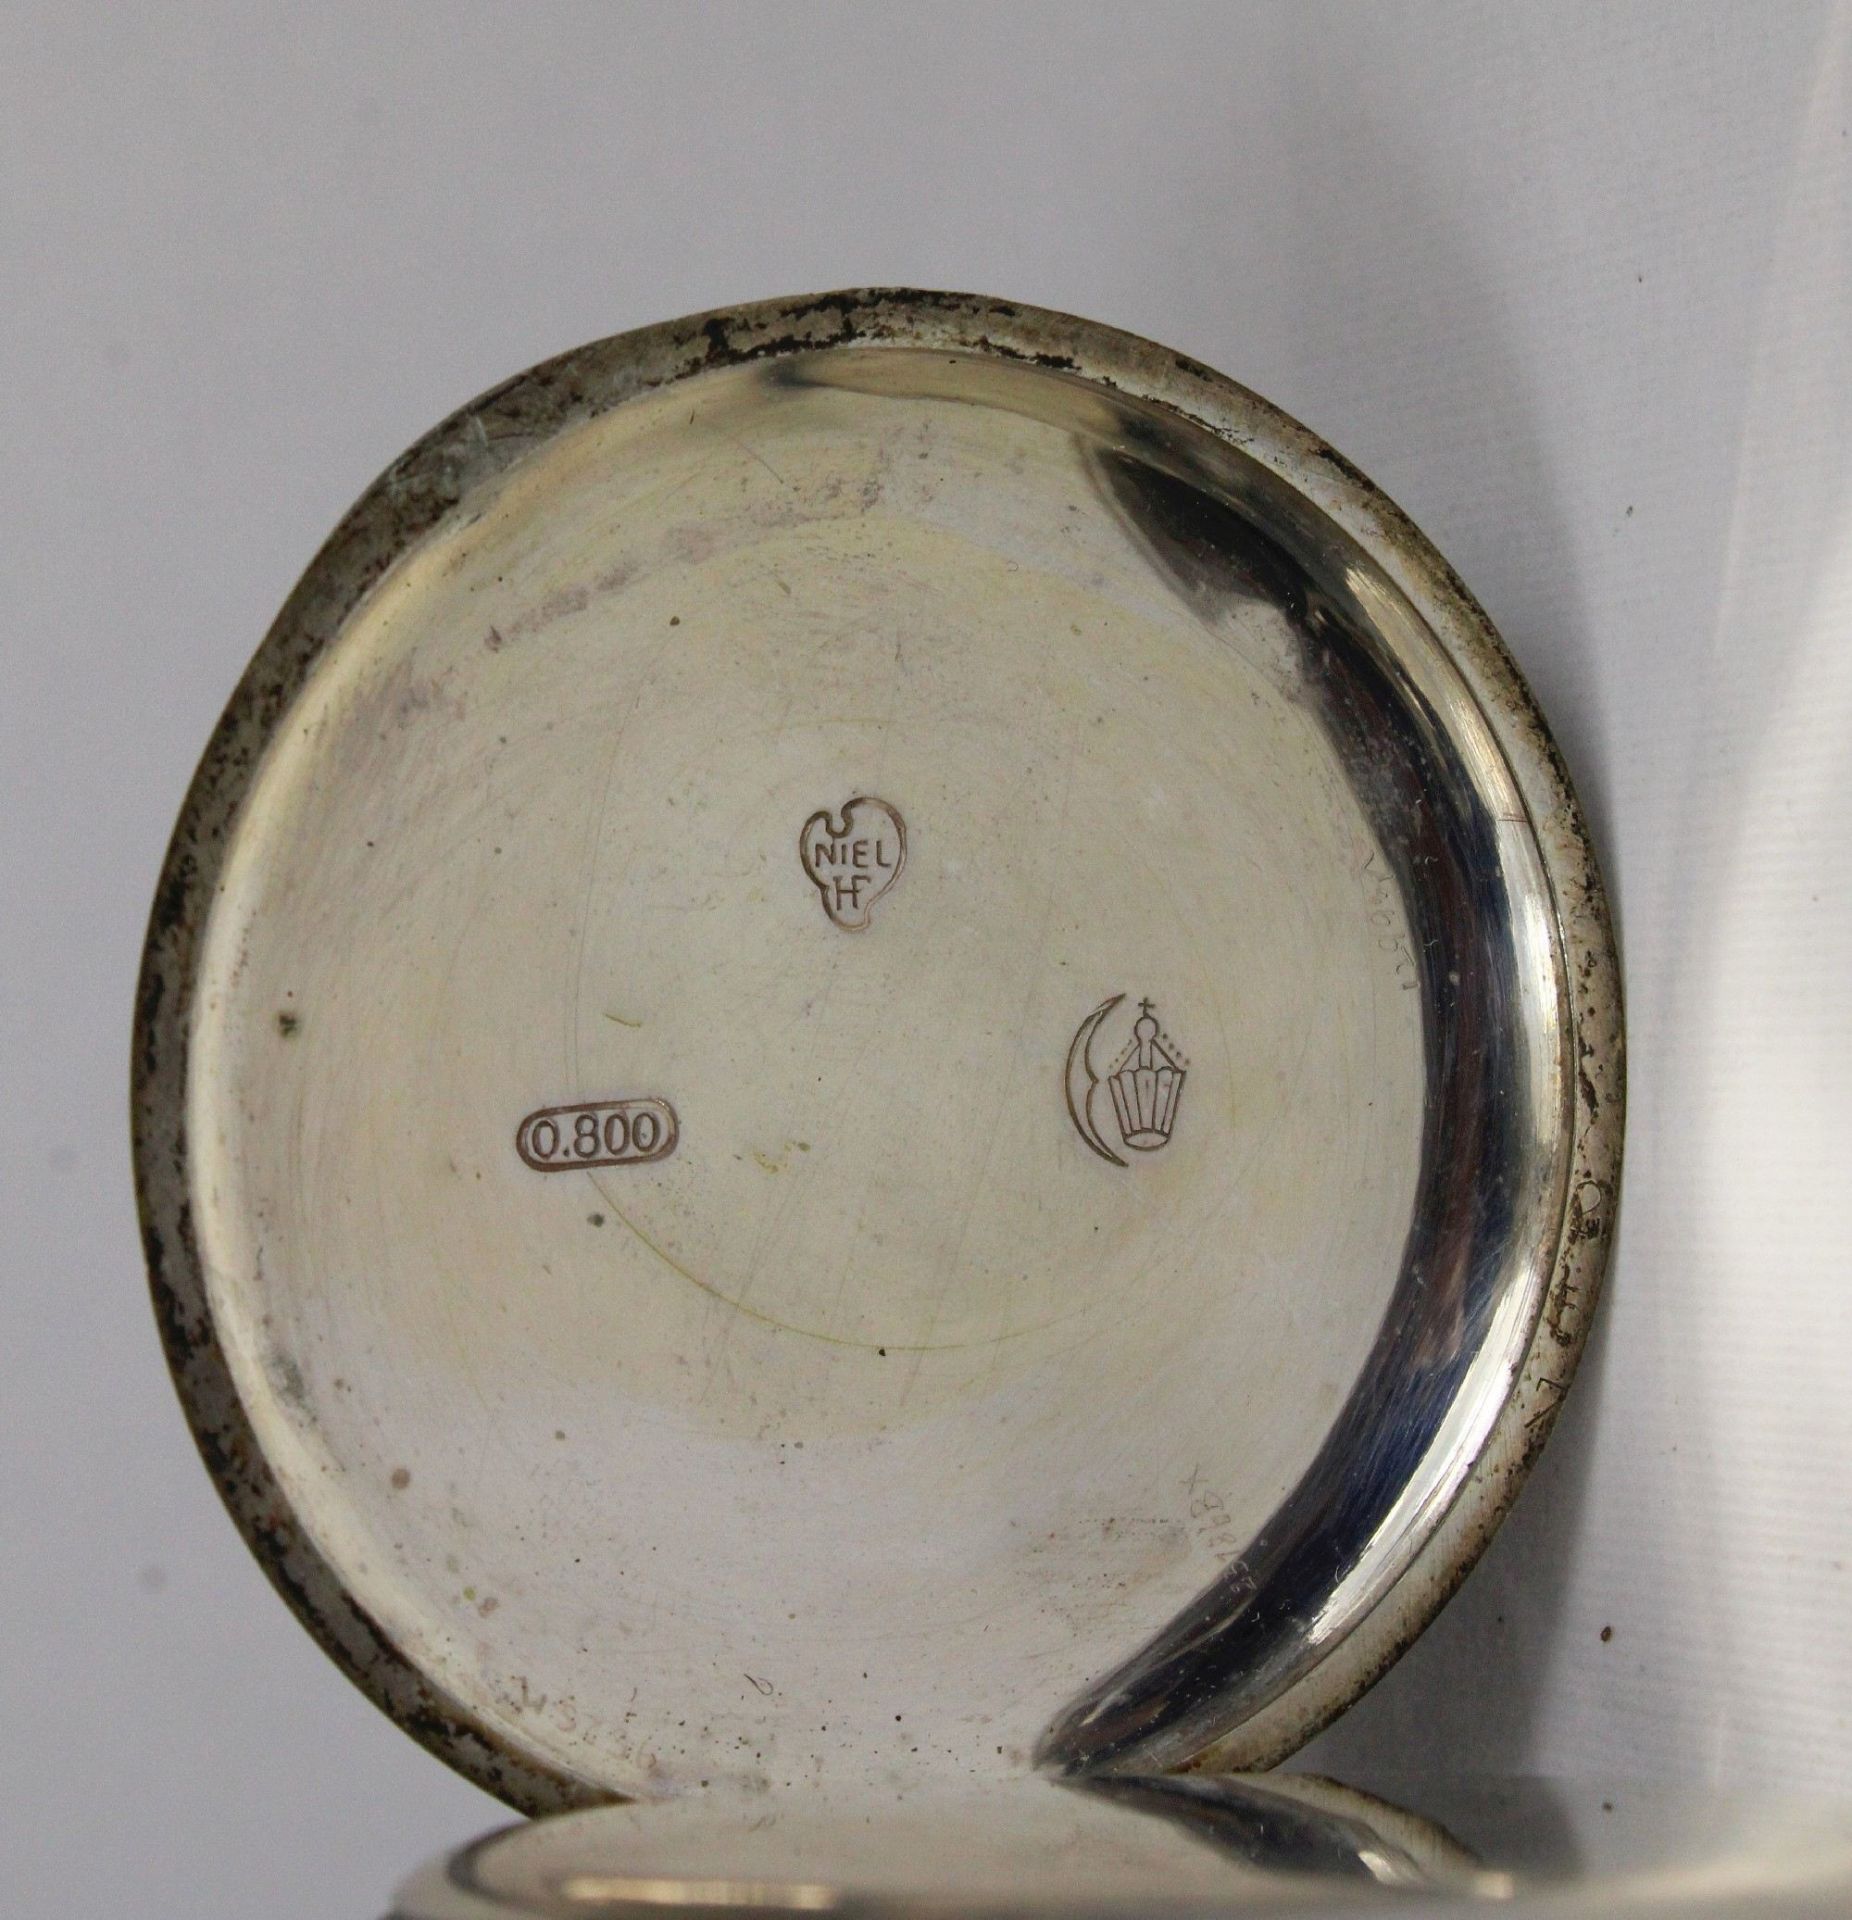 Silberne Herrentaschenuhr, 800er Silber, Punze: Halbmond und Krone, Uhrmacher: Niel, Modelnummer: 2 - Image 6 of 6